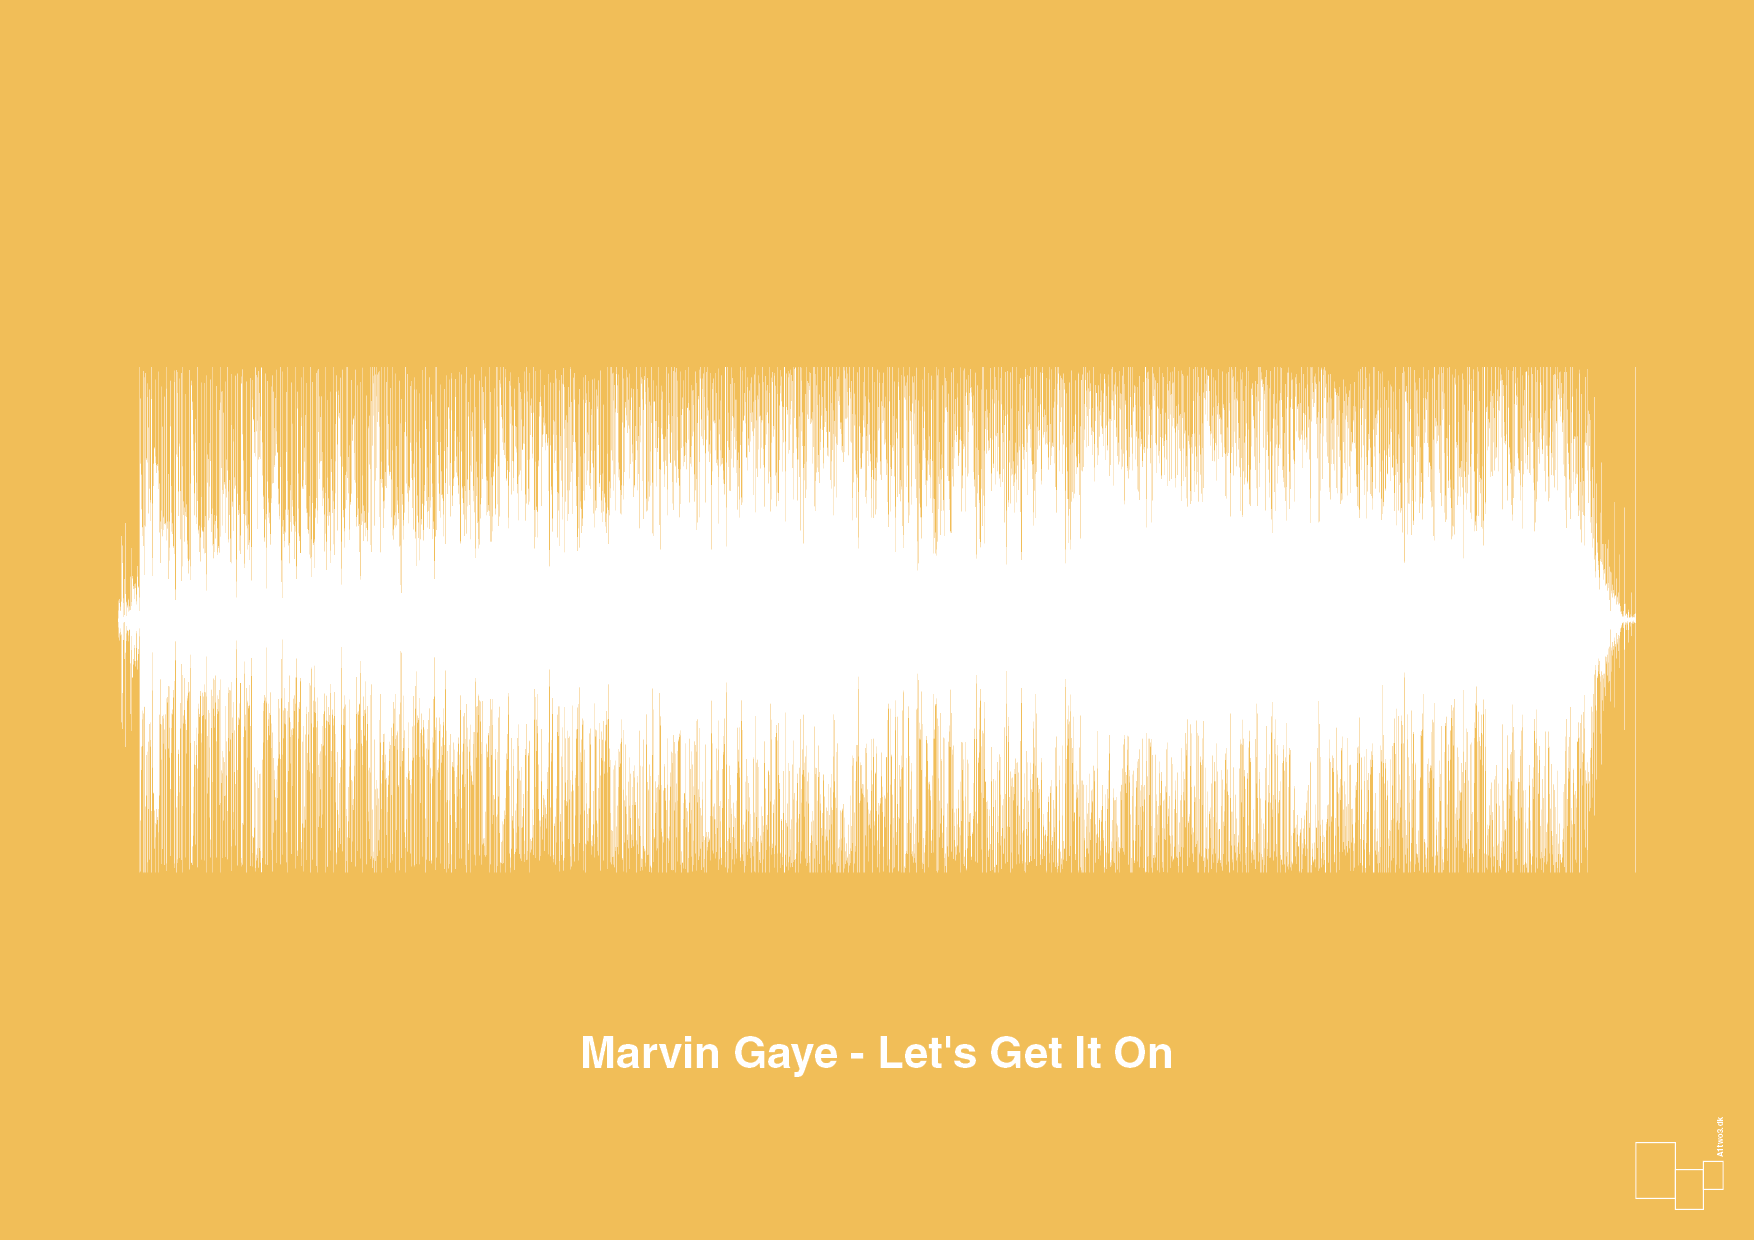 marvin gaye - let's get it on - Plakat med Musik i Honeycomb